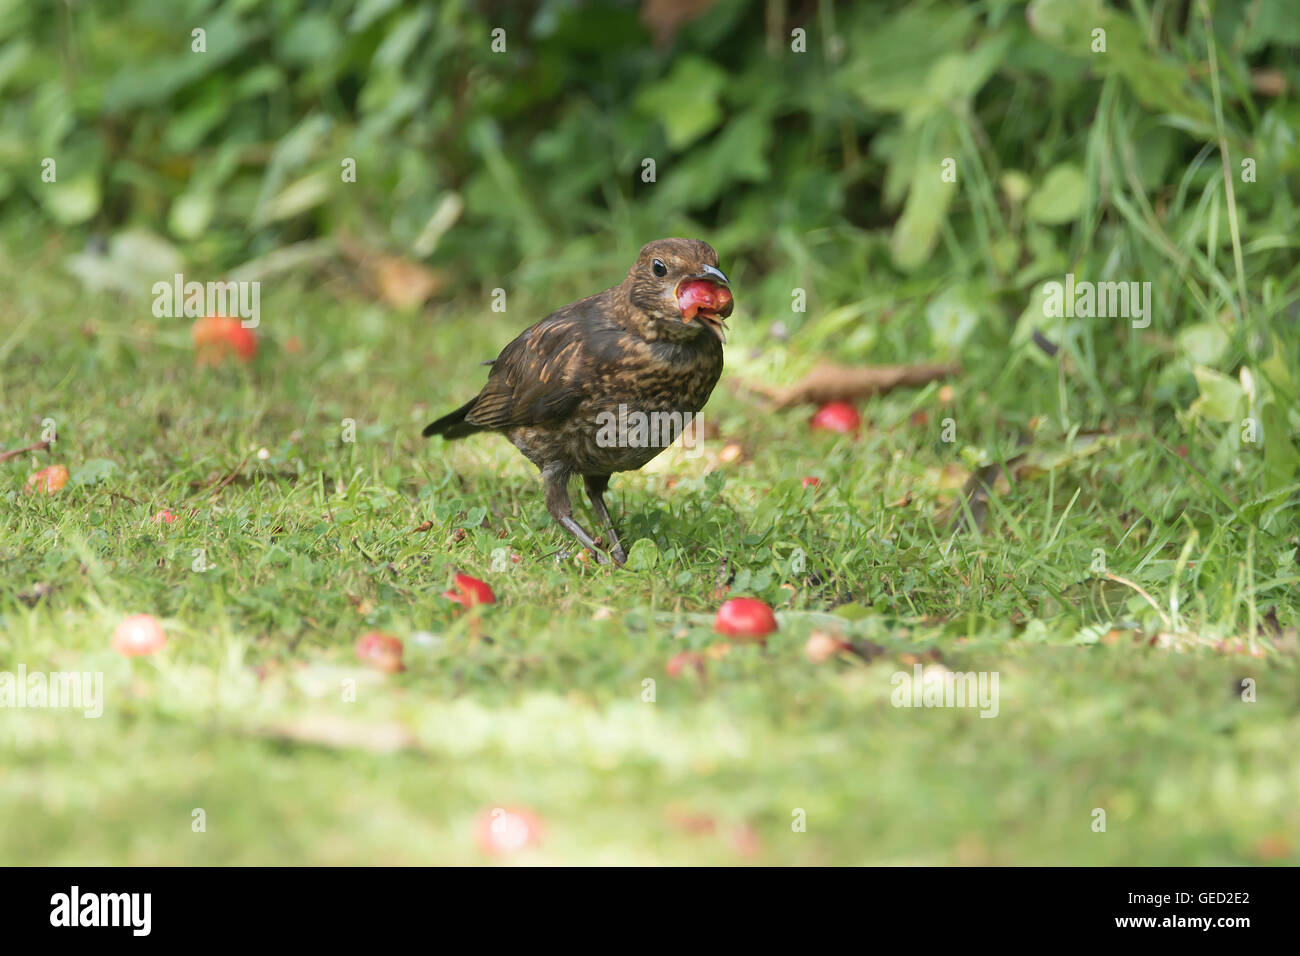 Oiseaux noirs mangeant des fruits tombés Banque D'Images